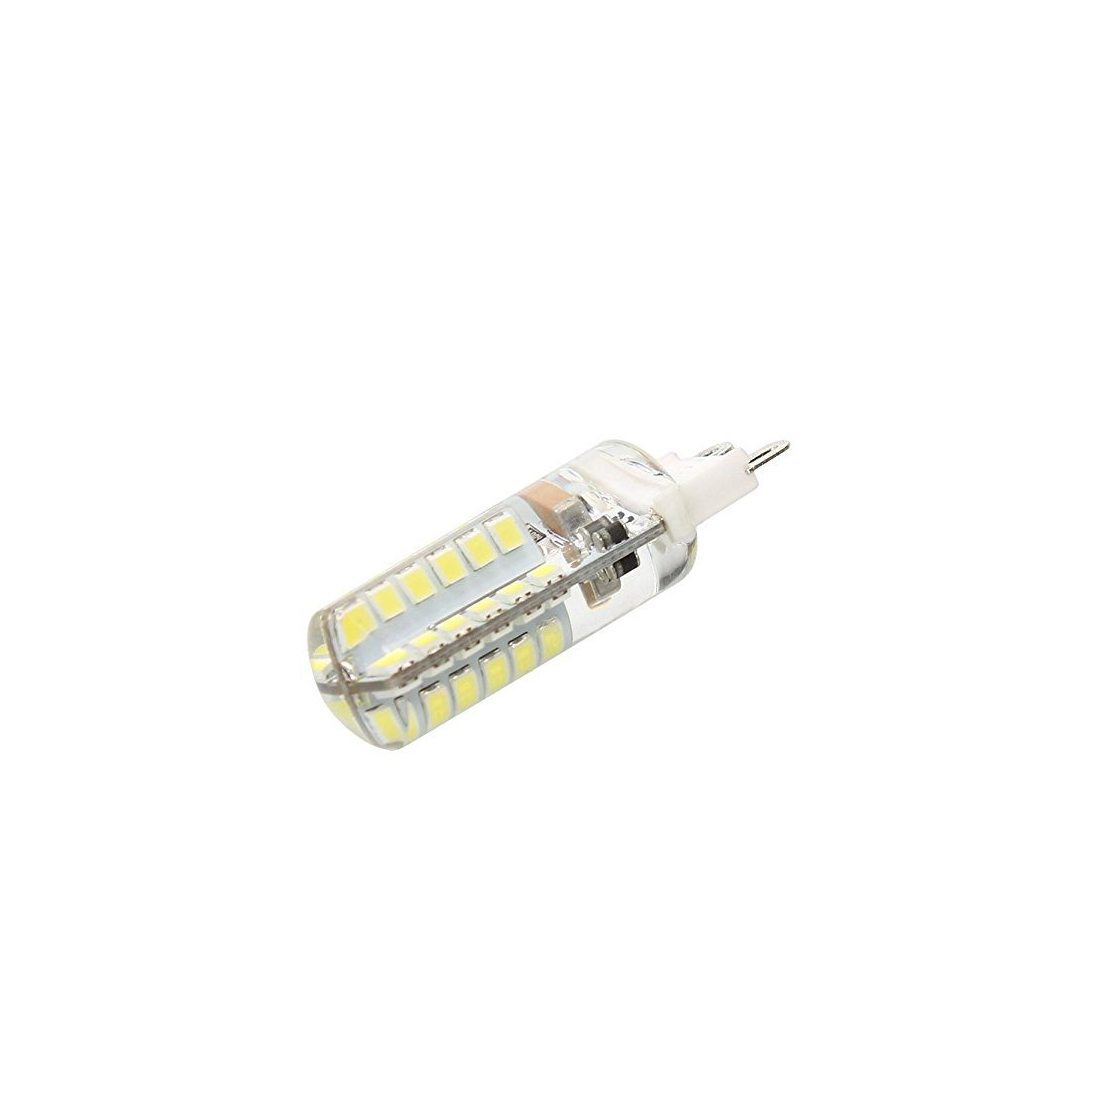 HHD® Lot de 10 Ampoule G9 LED 3.5W Ampoule Lampe 64 SMD 3014 LED Blanc Froid 300LM Super Lumineux LED Ampoule Spot LED Rempla